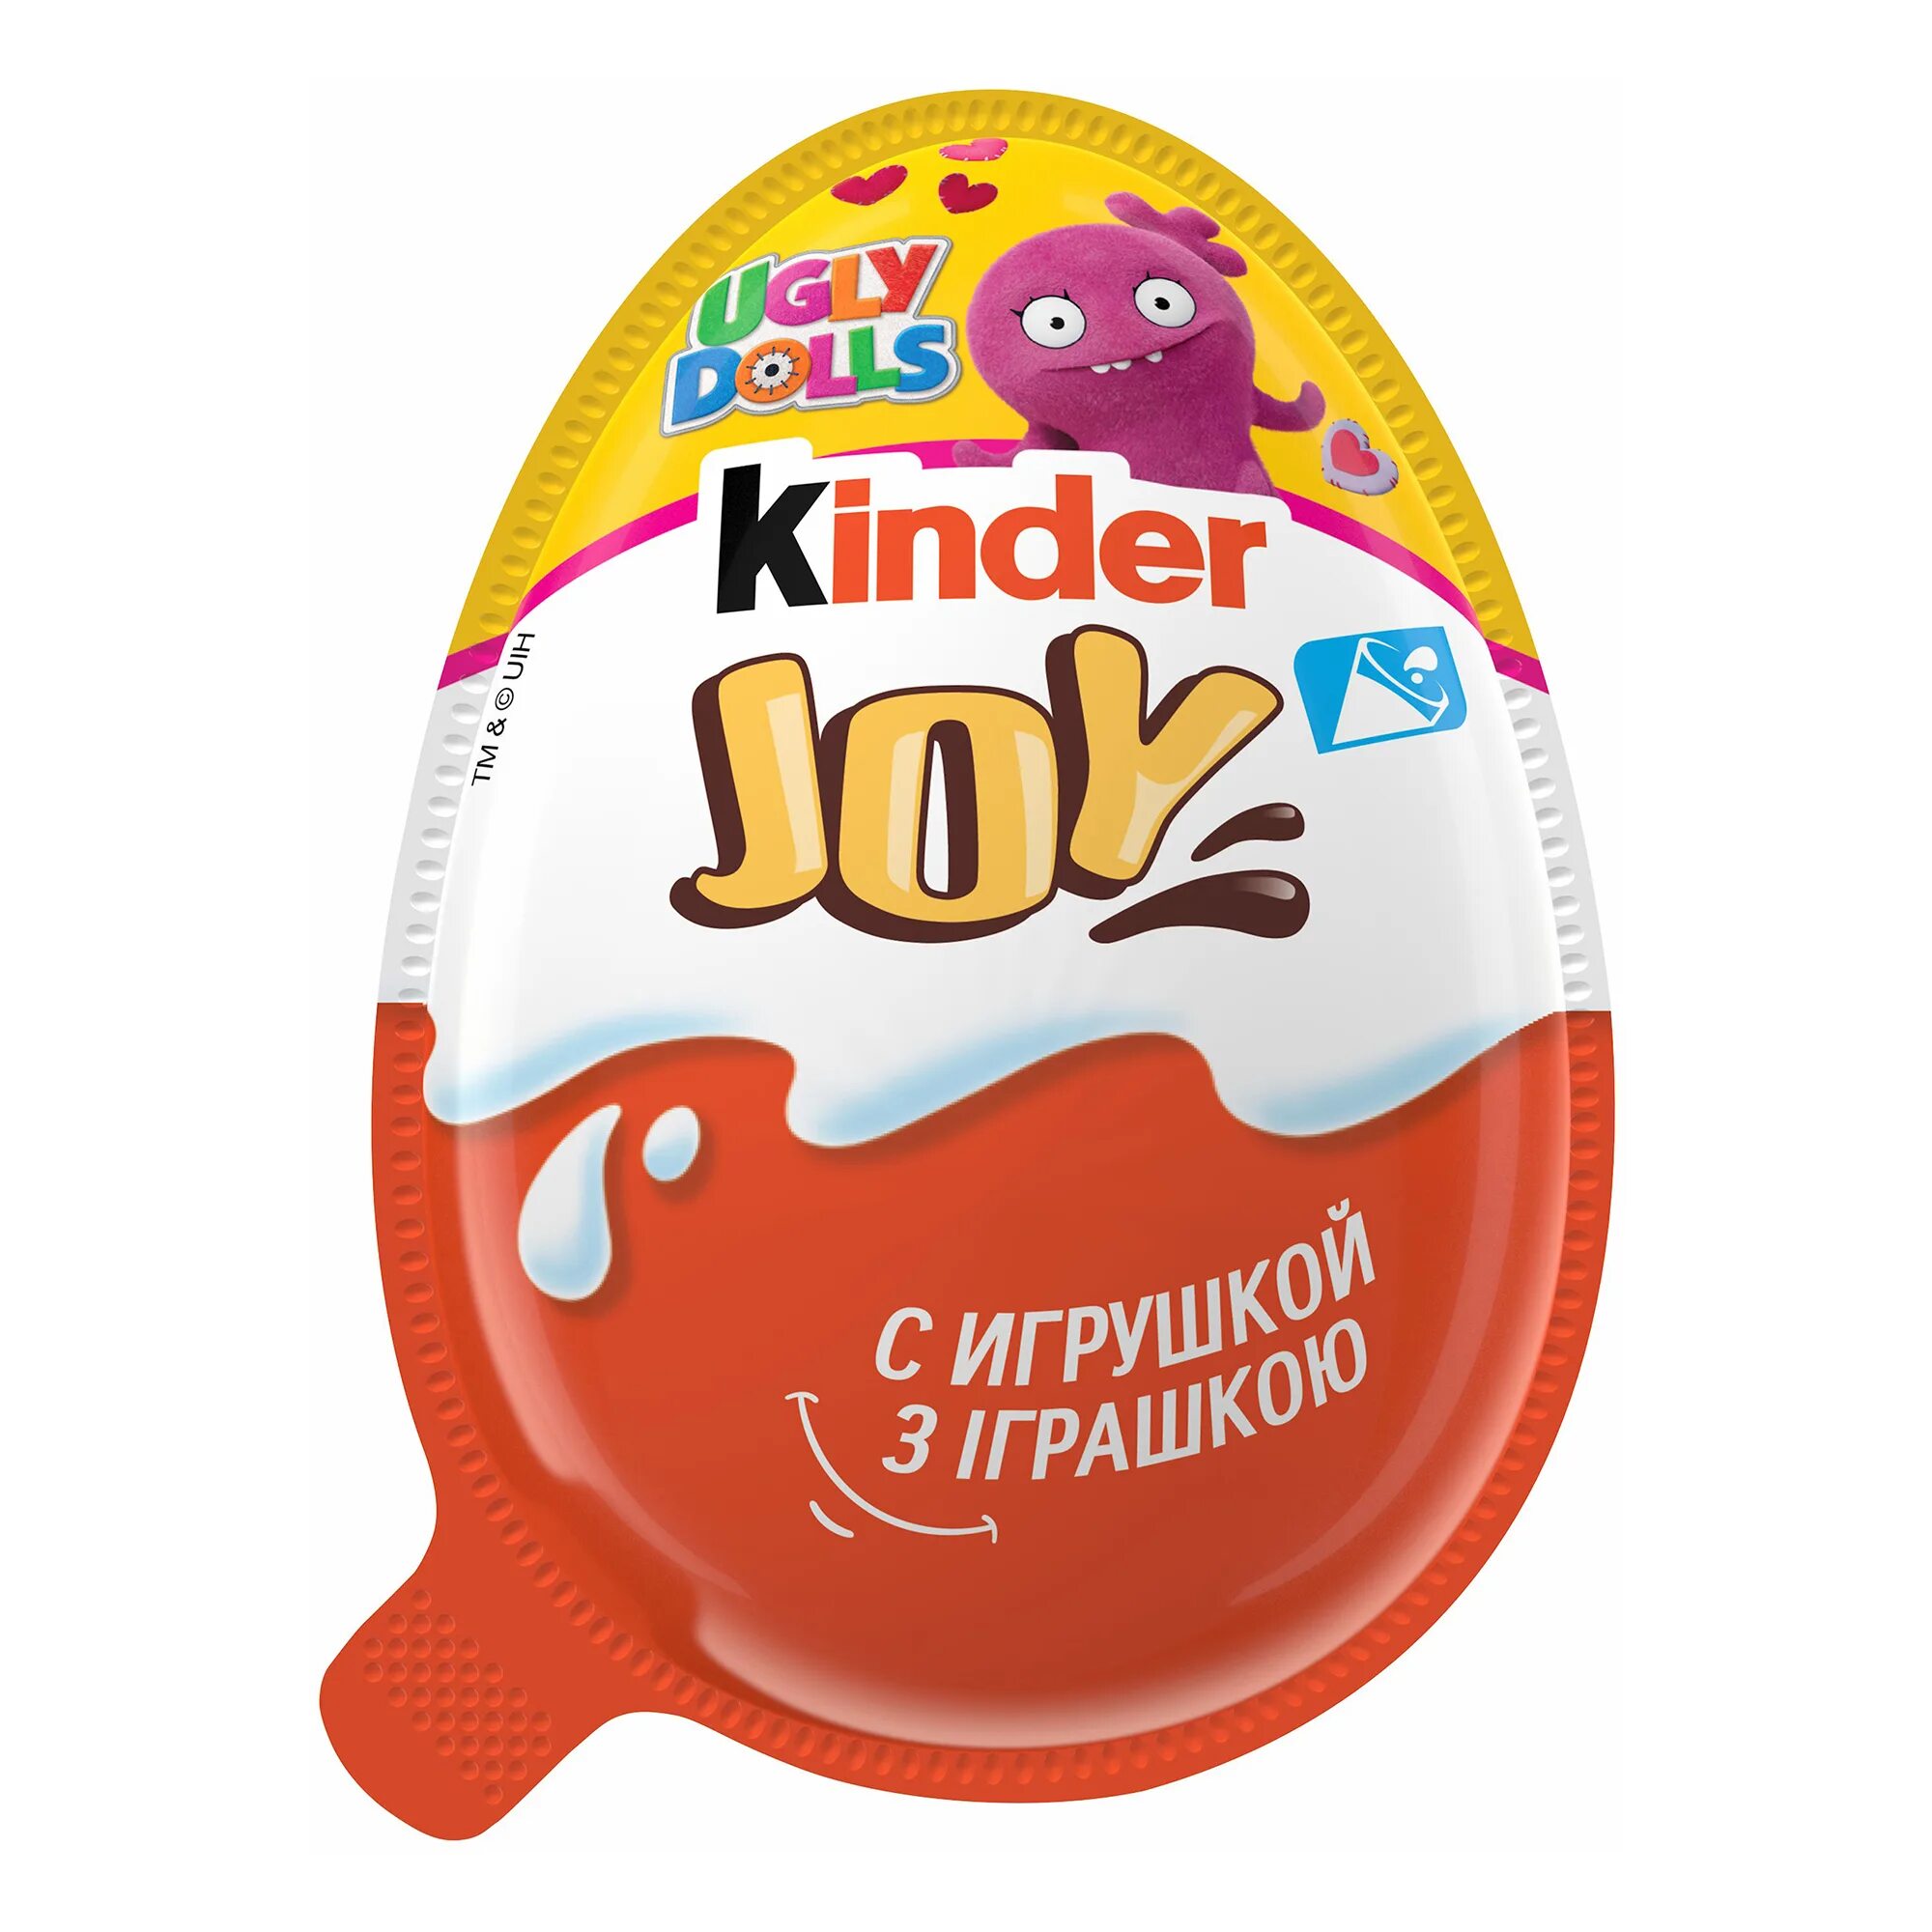 Яйцо шоколадное kinder Джой 20г. Яйцо kinder Joy шоколадное, 20 г. Kinder Joy (Киндер Джой) для мальчиков. Uglydolls Киндер Джой. Киндер джой купить